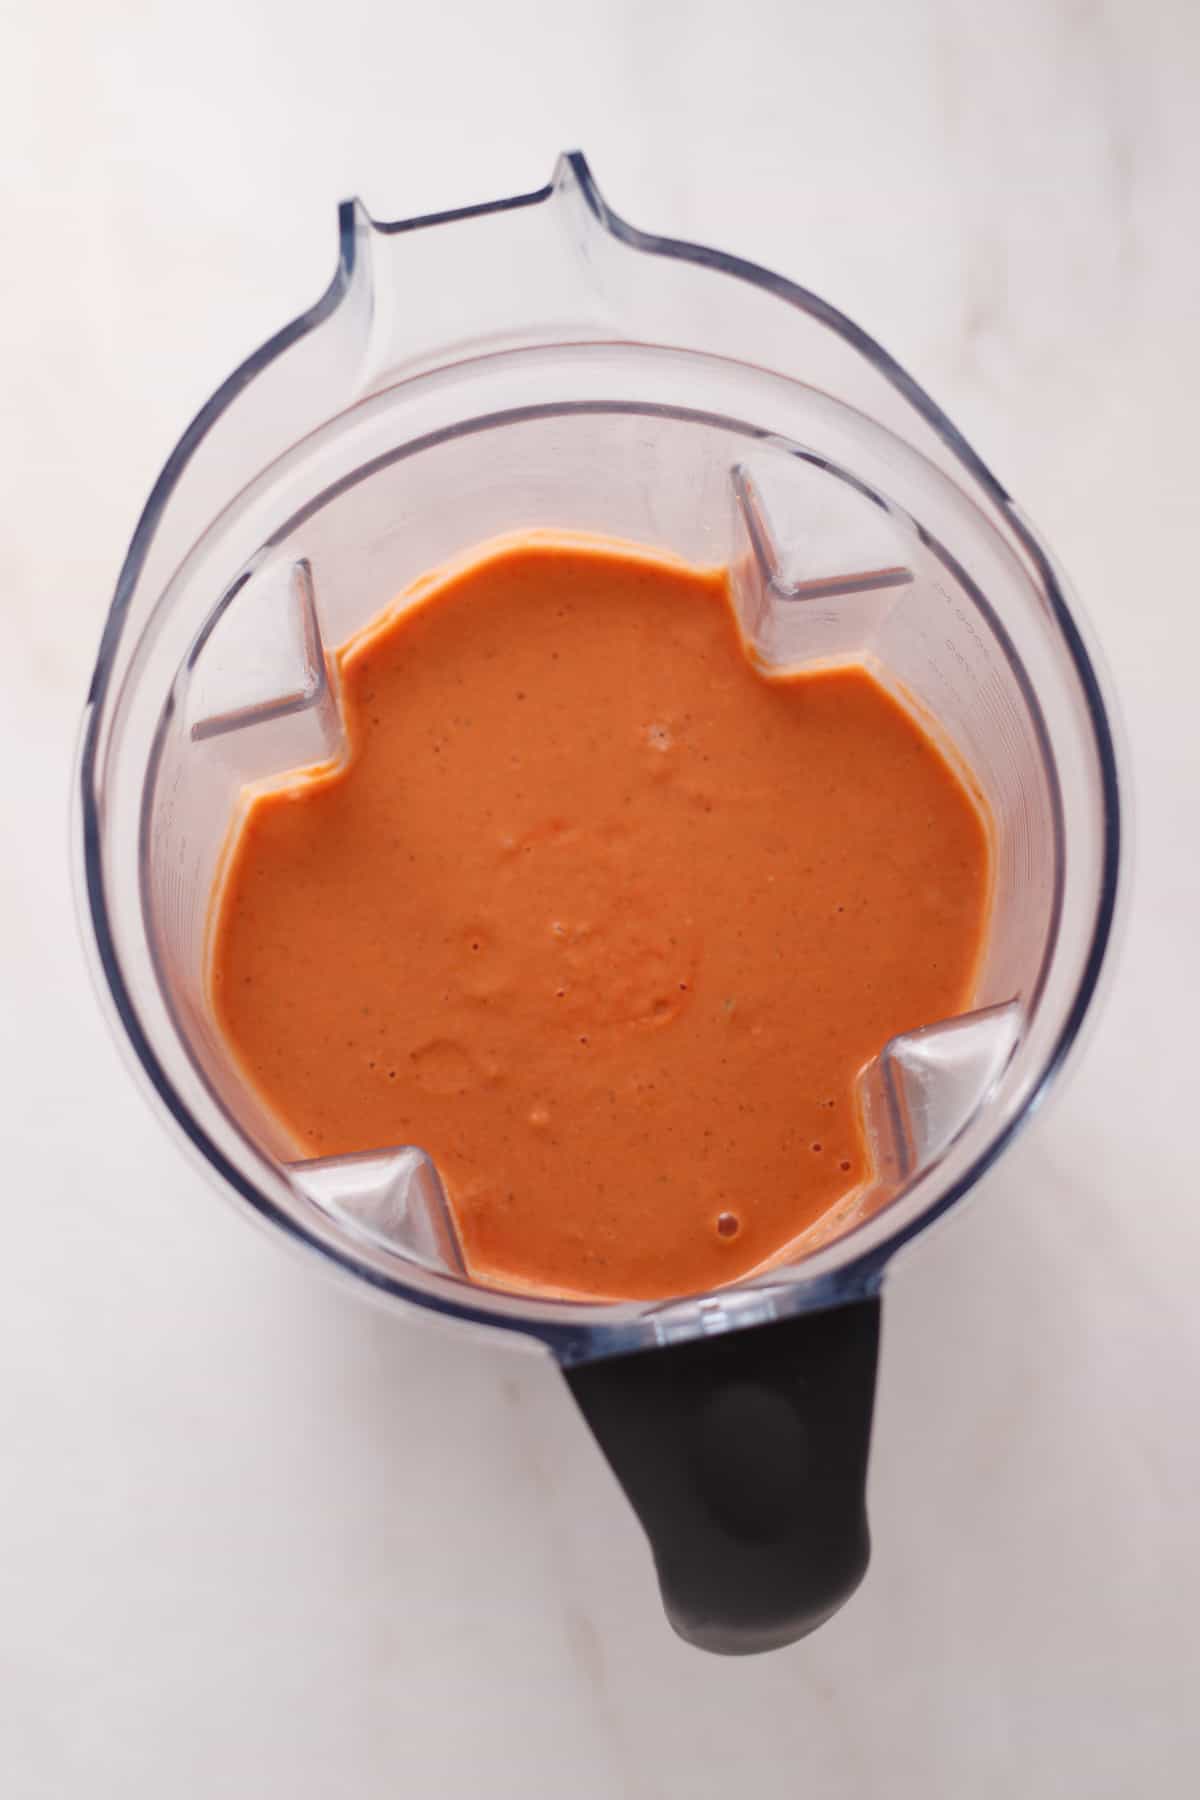 Vegan tomato soup blended in a vitamix blender.